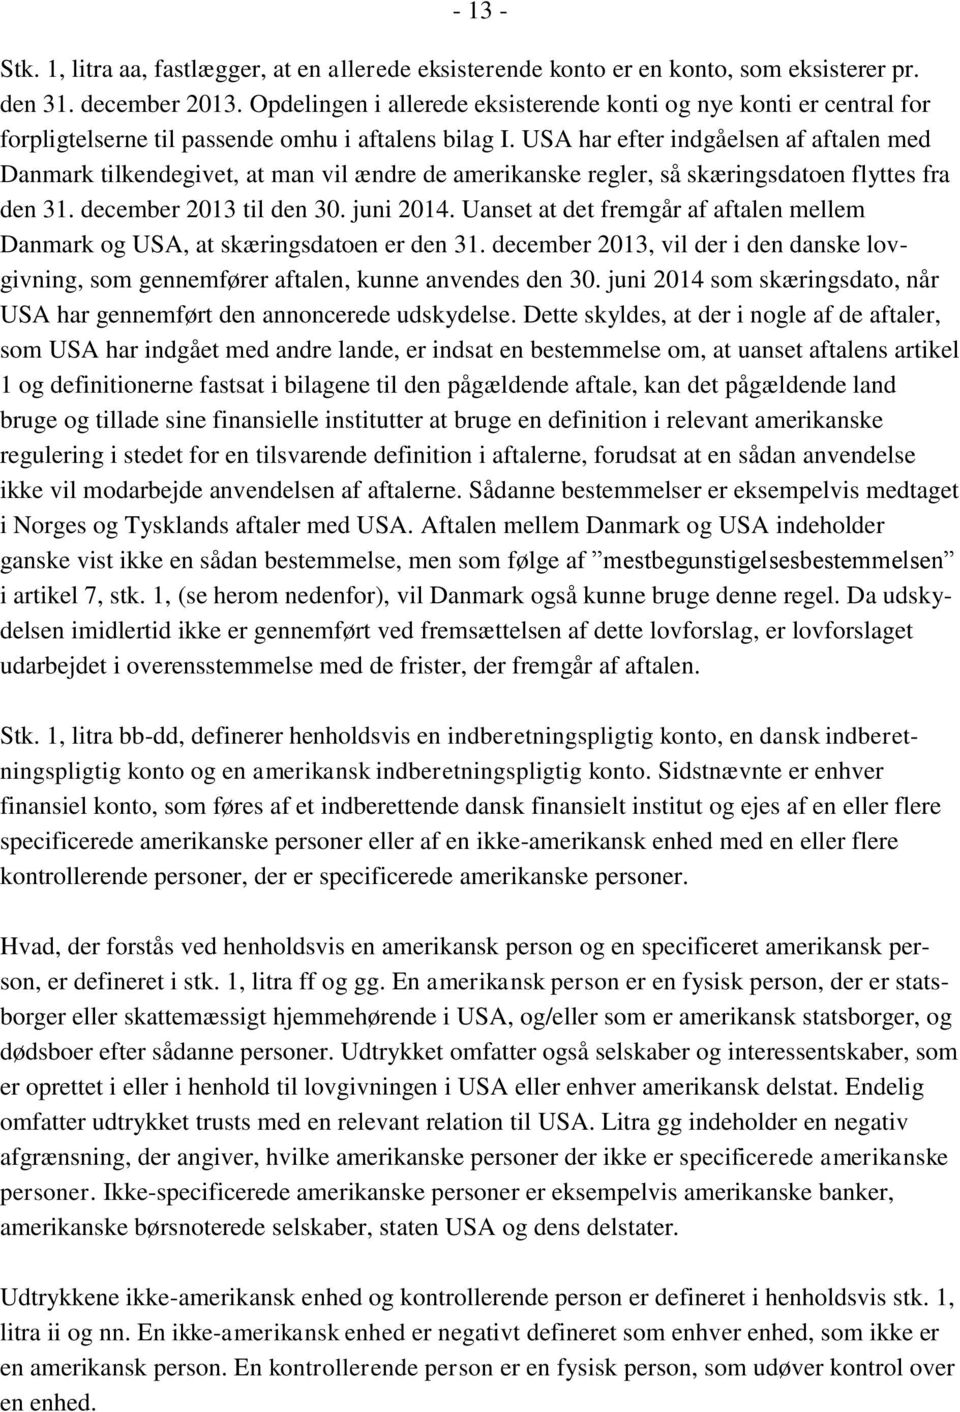 USA har efter indgåelsen af aftalen med Danmark tilkendegivet, at man vil ændre de amerikanske regler, så skæringsdatoen flyttes fra den 31. december 2013 til den 30. juni 2014.